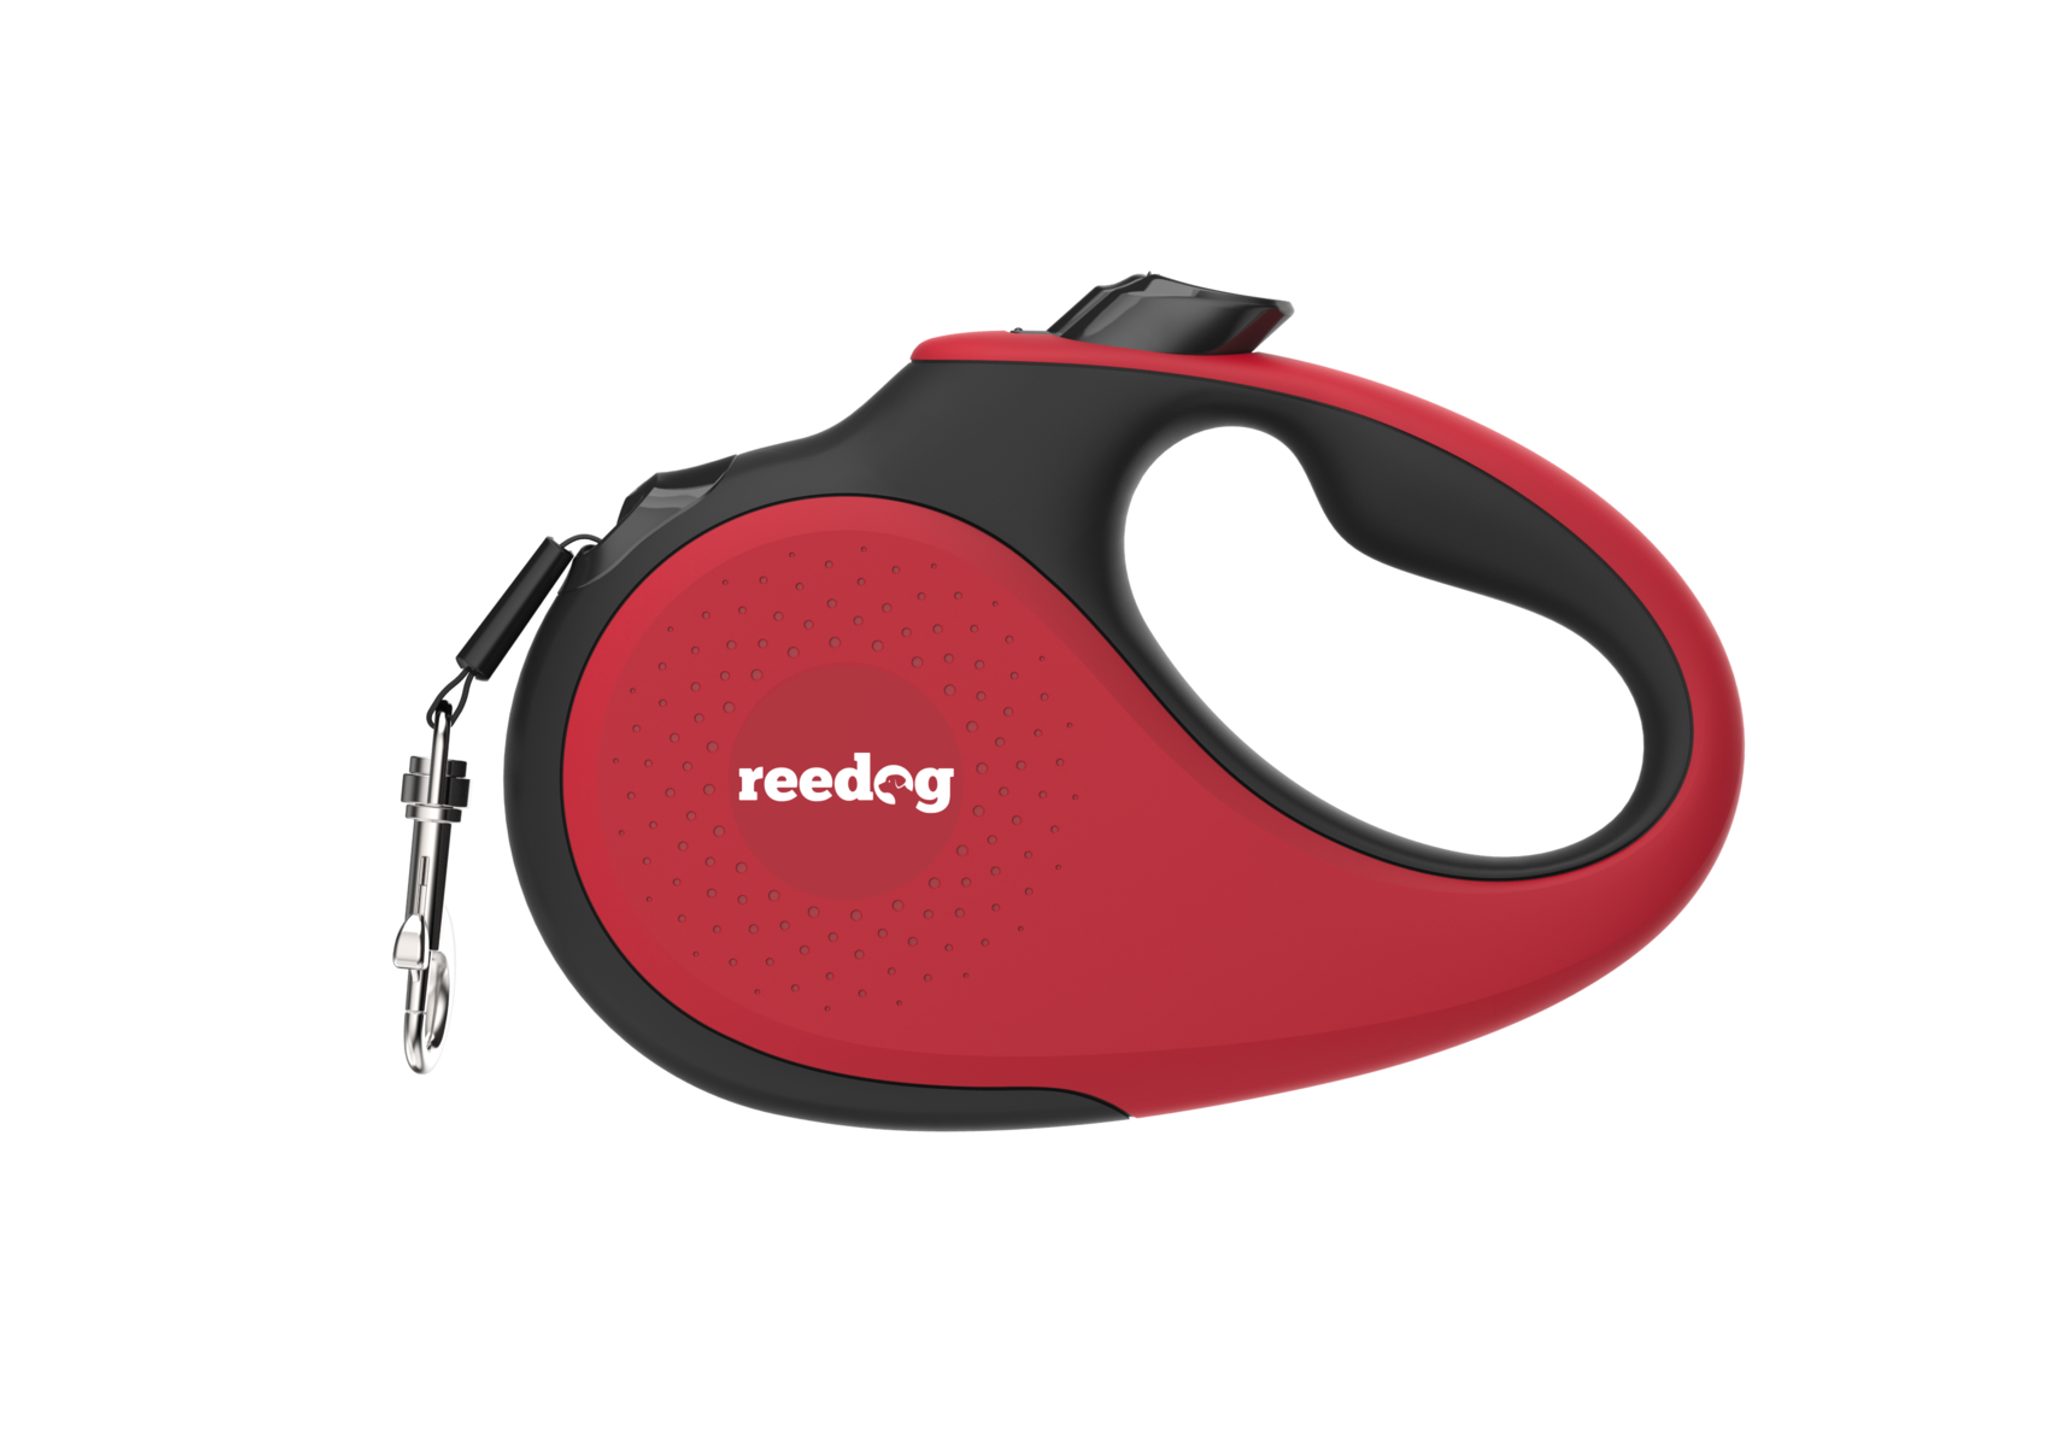 Reedog Senza Premium samonavíjecí vodítko XS 12kg / 3m páska / červené